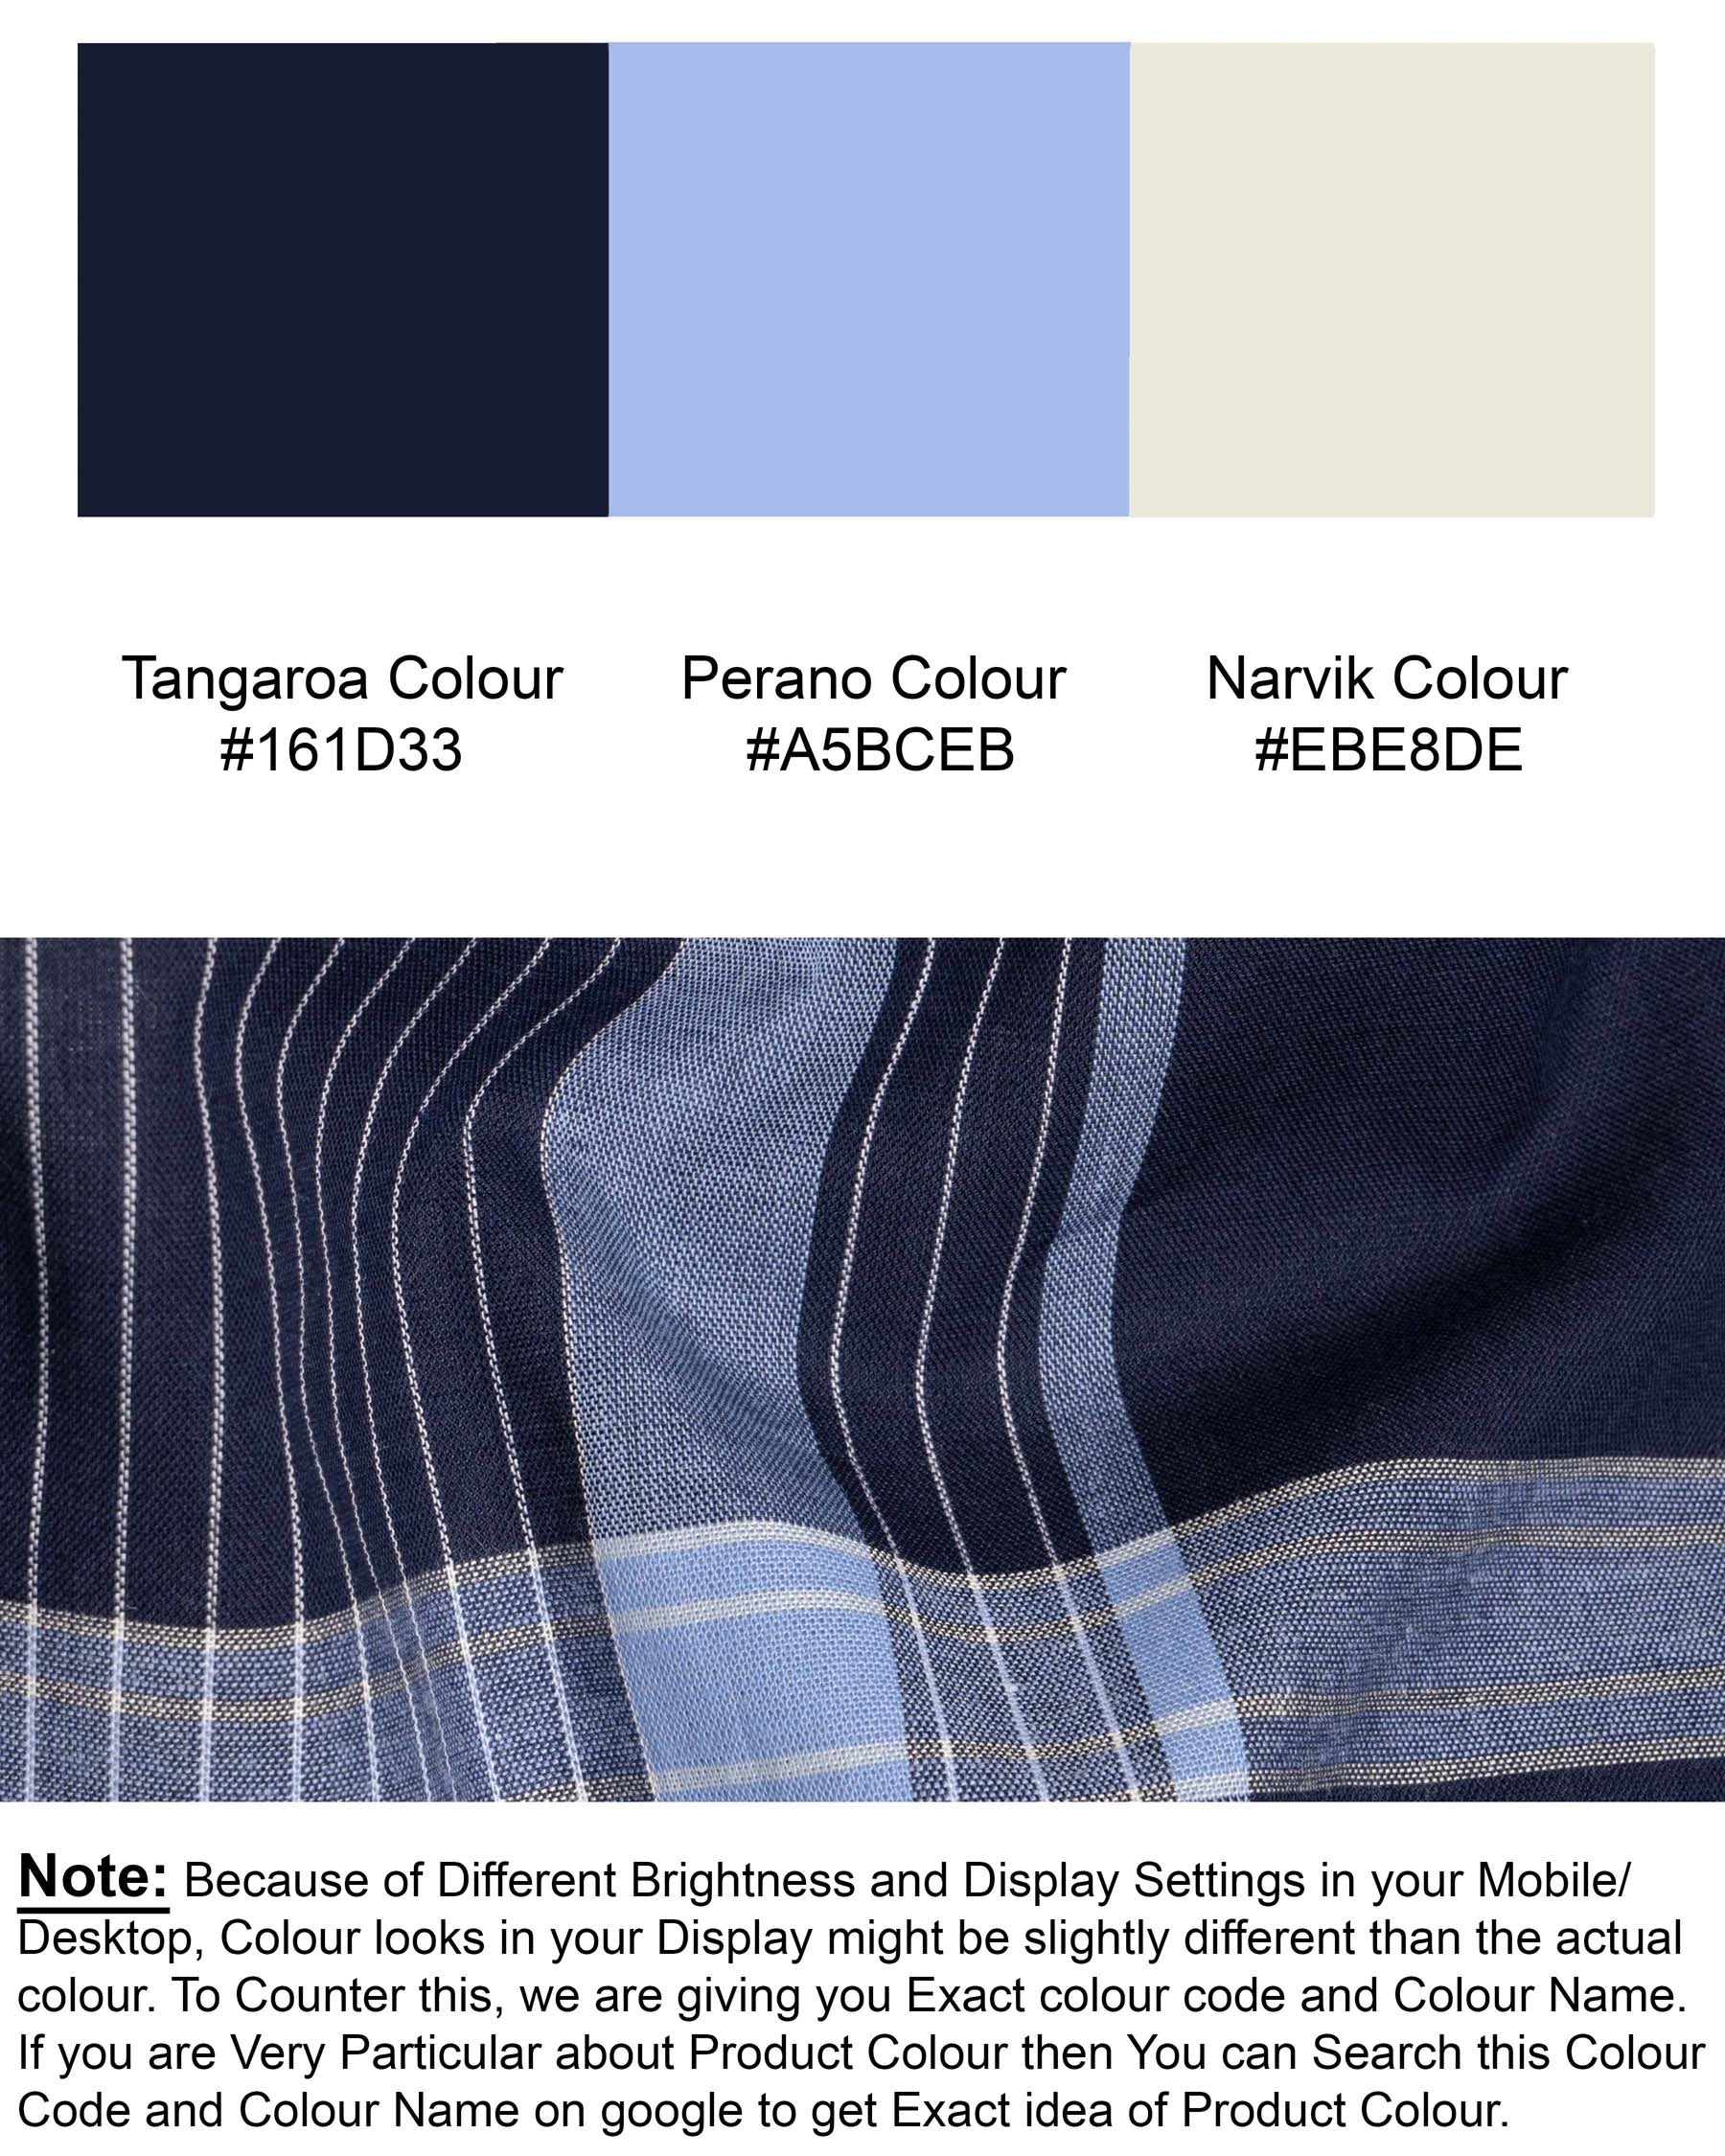 Tangaroa and Perano Blue Checkered Premium Cotton Shirt 6004-BD-38,6004-BD-H-38,6004-BD-39,6004-BD-H-39,6004-BD-40,6004-BD-H-40,6004-BD-42,6004-BD-H-42,6004-BD-44,6004-BD-H-44,6004-BD-46,6004-BD-H-46,6004-BD-48,6004-BD-H-48,6004-BD-50,6004-BD-H-50,6004-BD-52,6004-BD-H-52